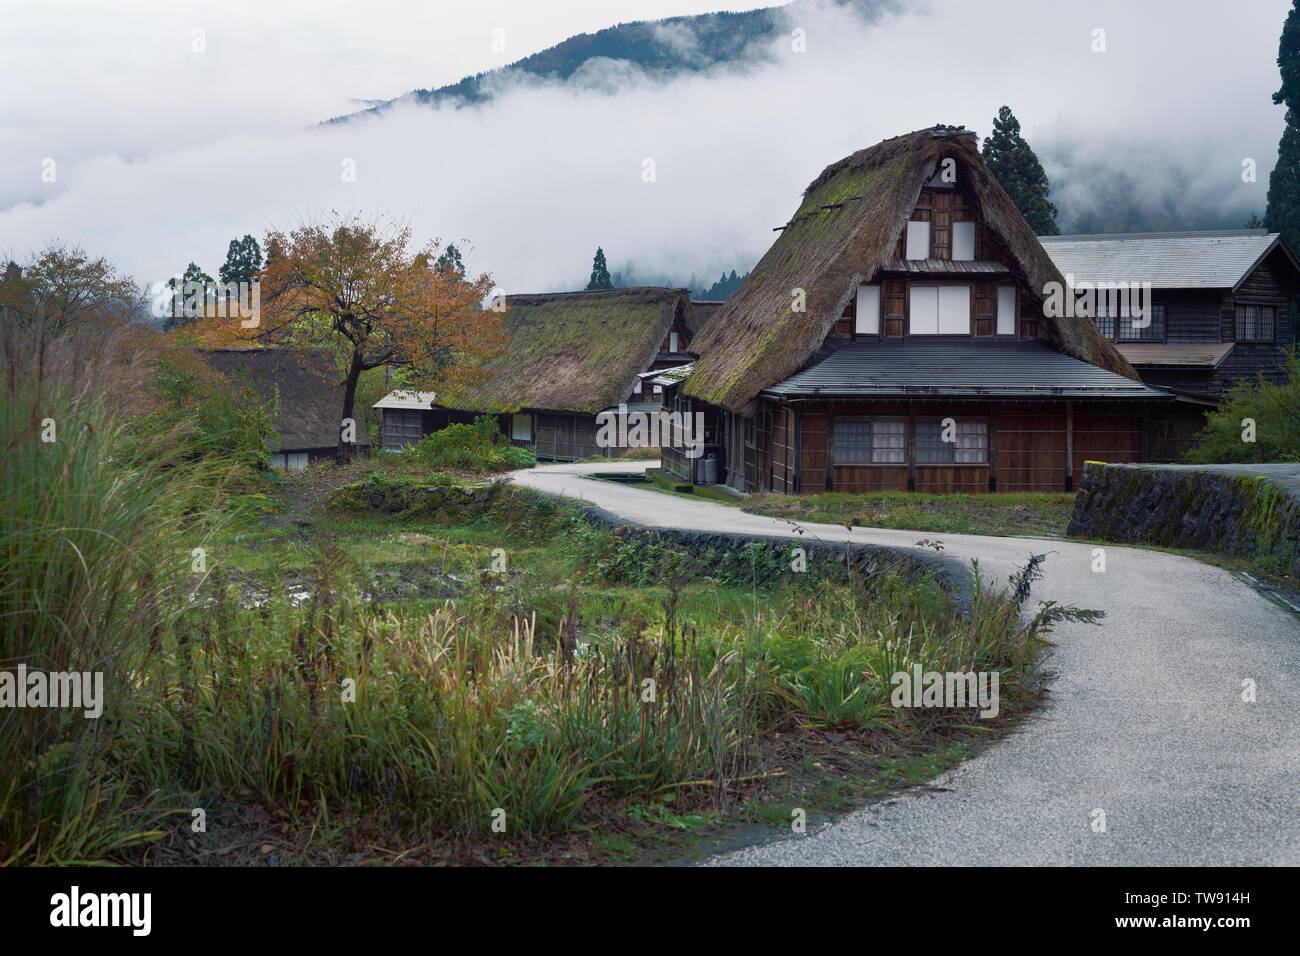 País por carretera serpenteante a través de Ainokura Mountain Village con estilo japonés histórico Gasshō casas rurales de paja. Ainokura, Prefectura de Toyama, Japón 2 Foto de stock